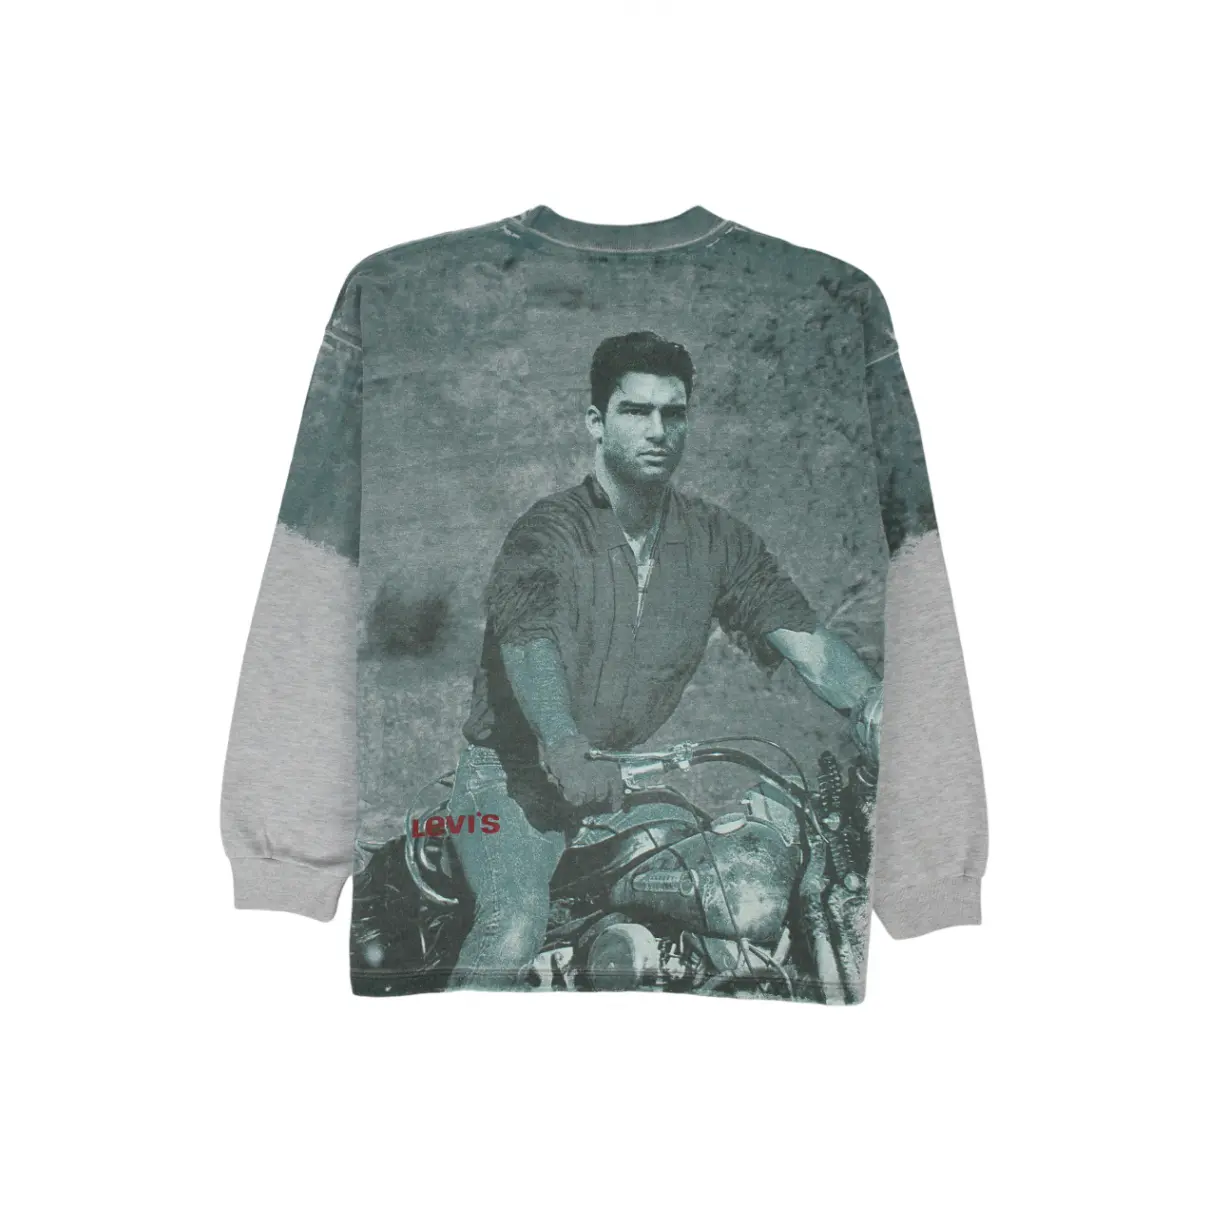 Buy Levi's Sweatshirt online - Vintage